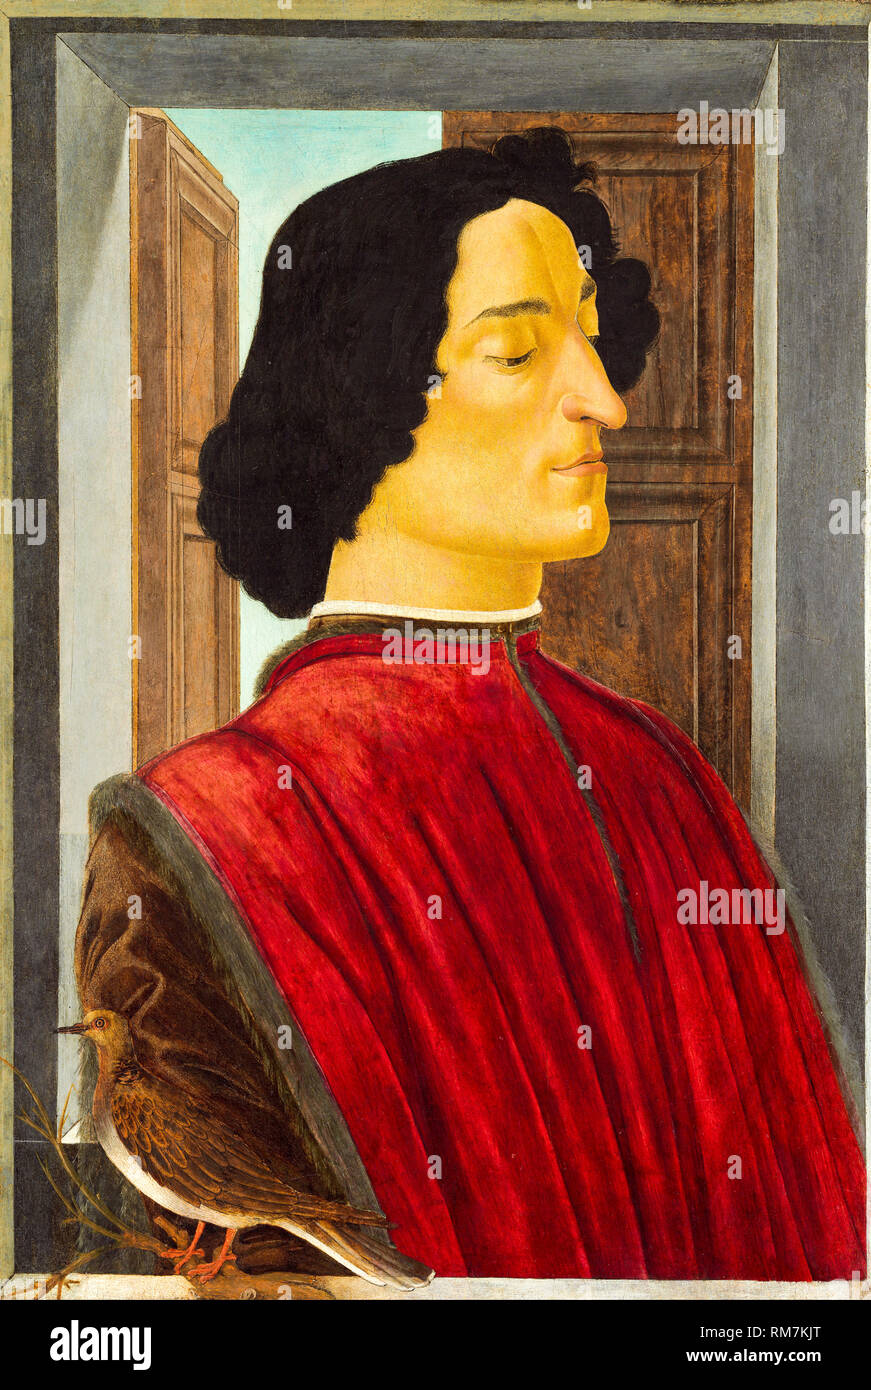 Giuliano de Medici (1453-1478), portrait painting by Sandro Botticelli, circa 1478-1480 Stock Photo